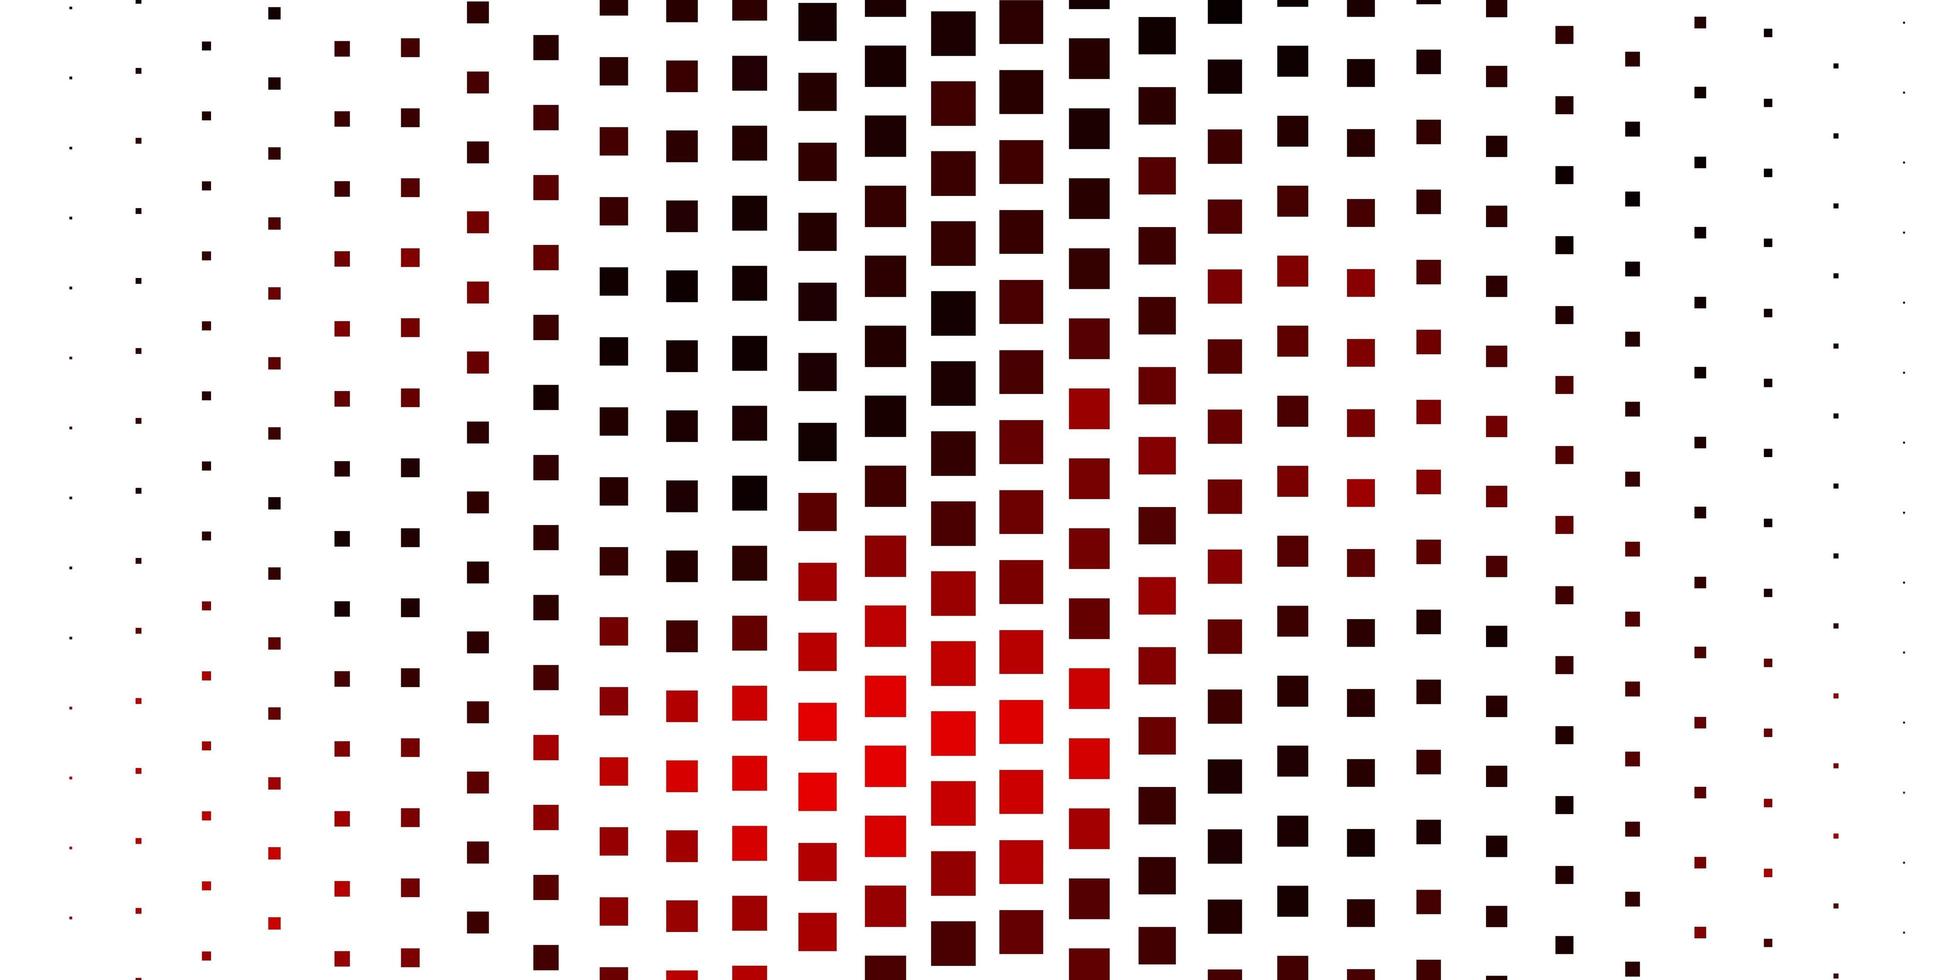 mörk röd vektor bakgrund med rektanglar.